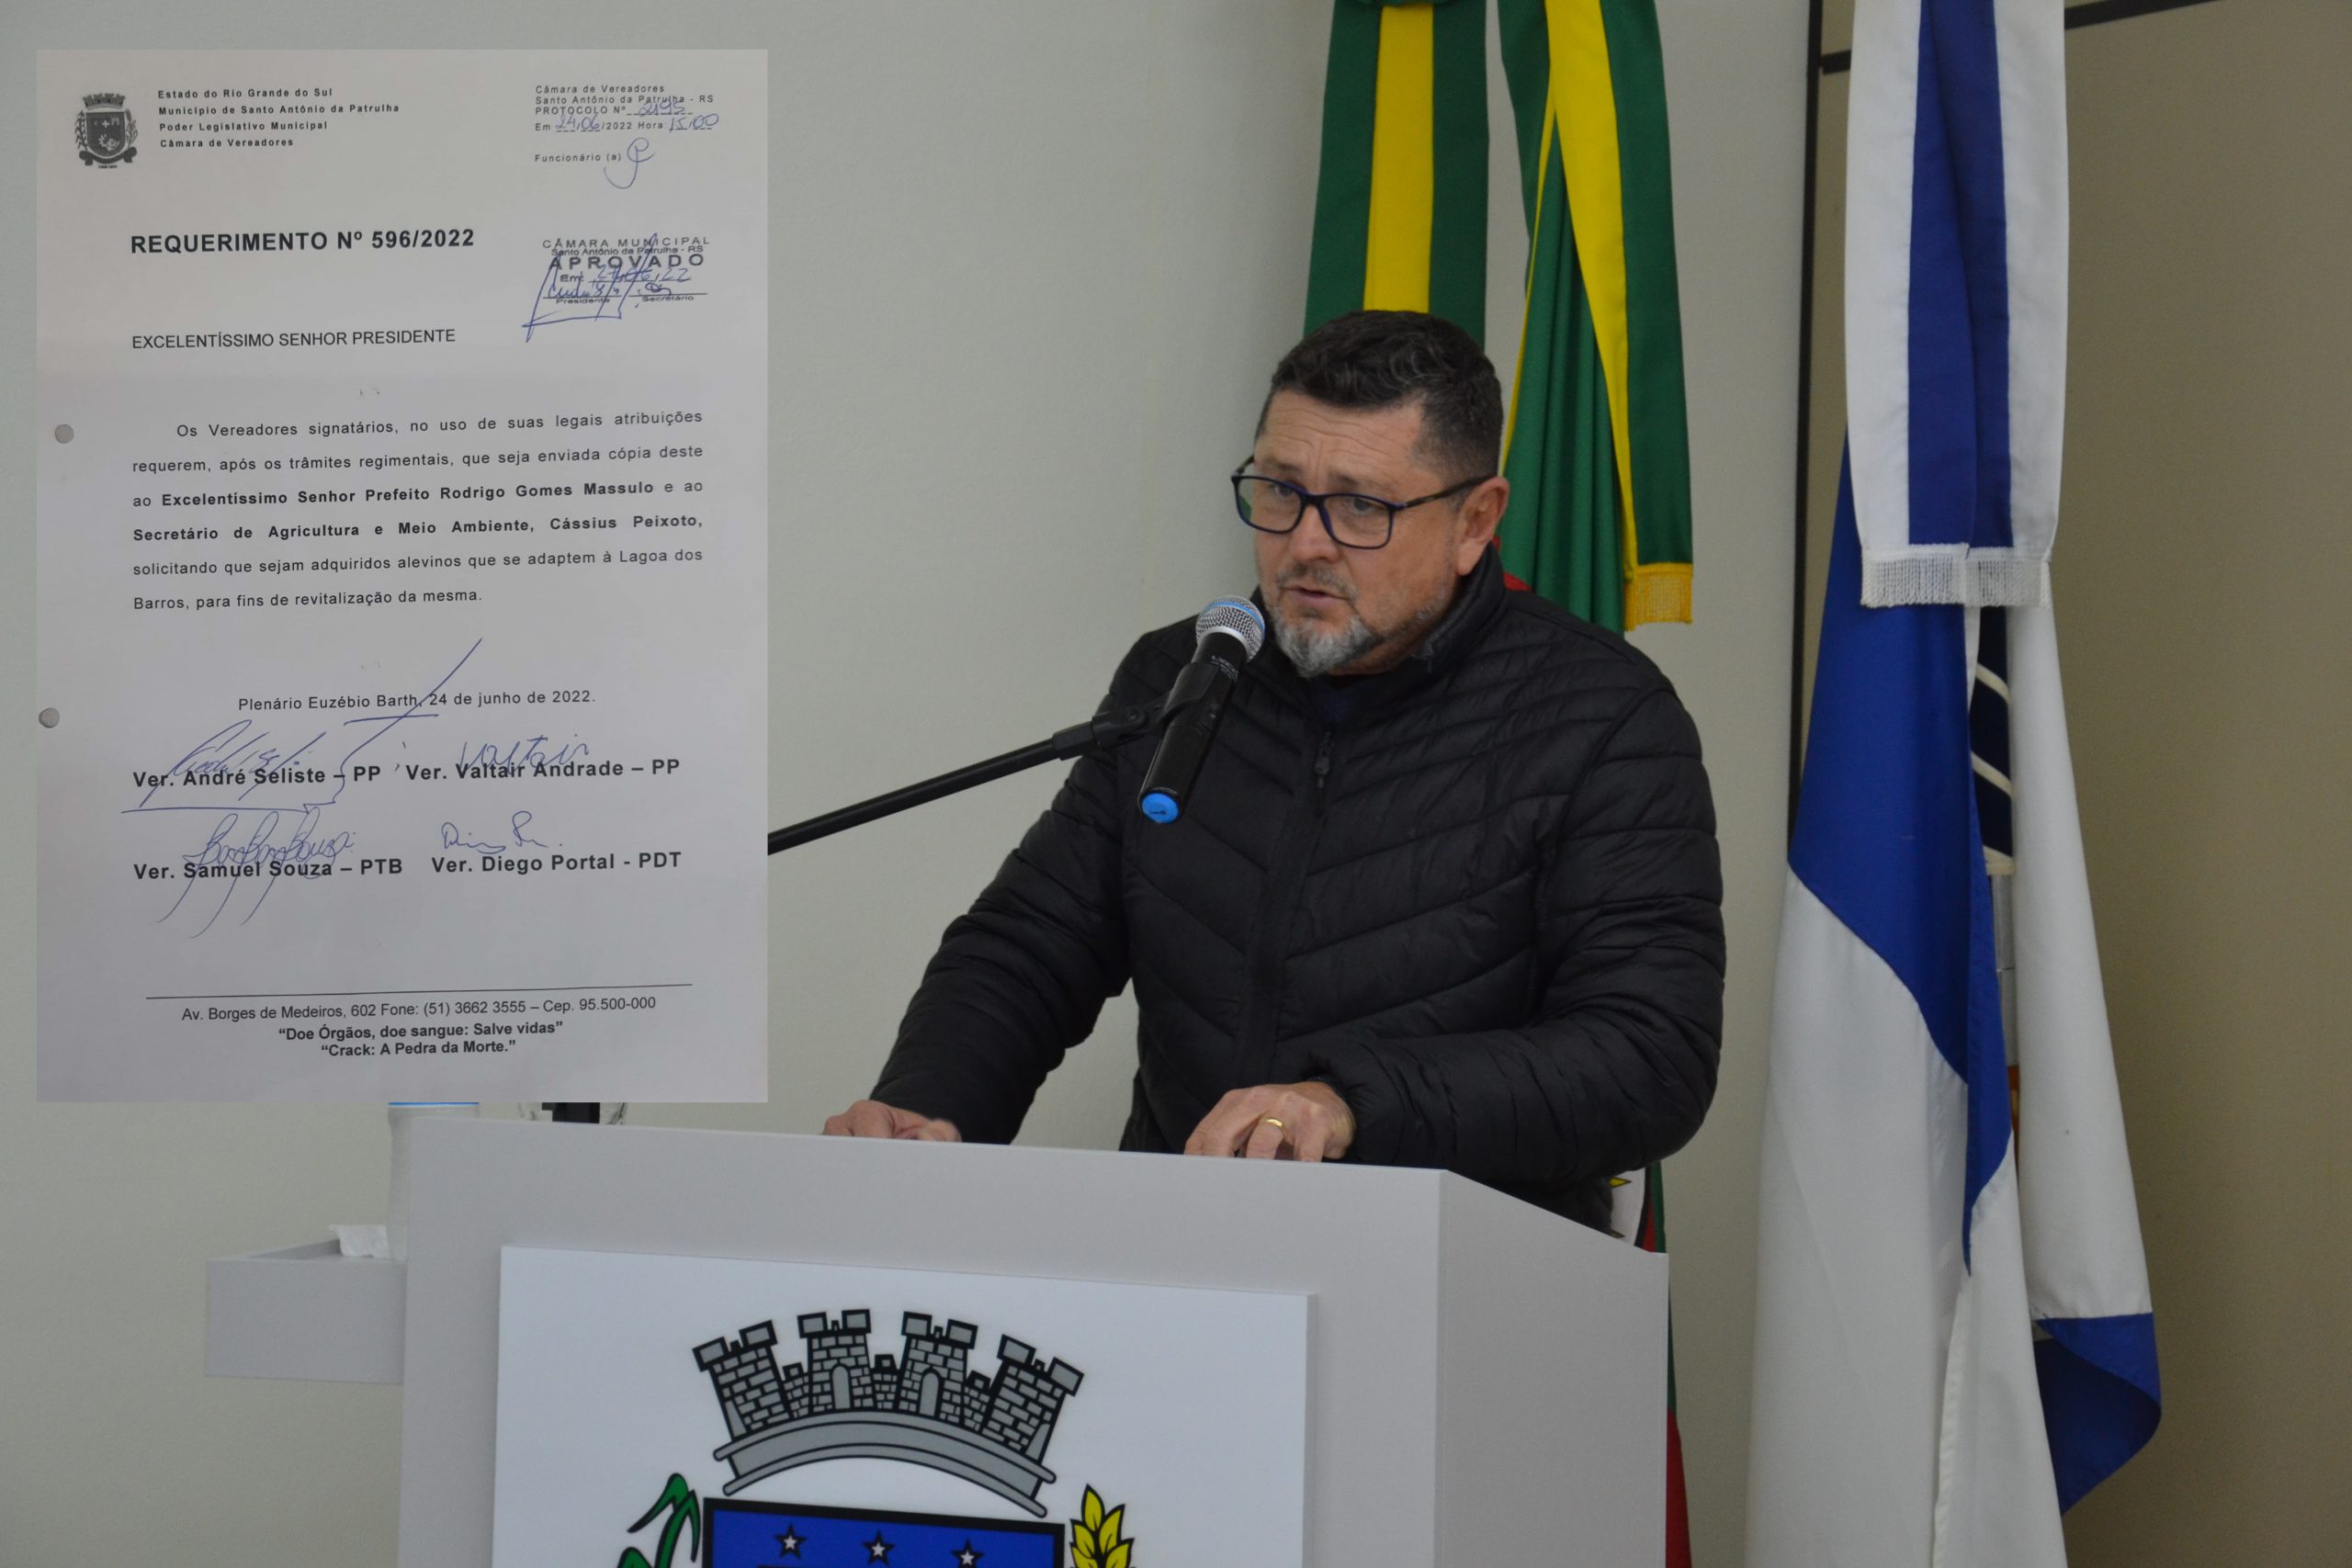 André propõe a soltura de alevinos para revitalização do espaço natural da Lagoa dos Barros